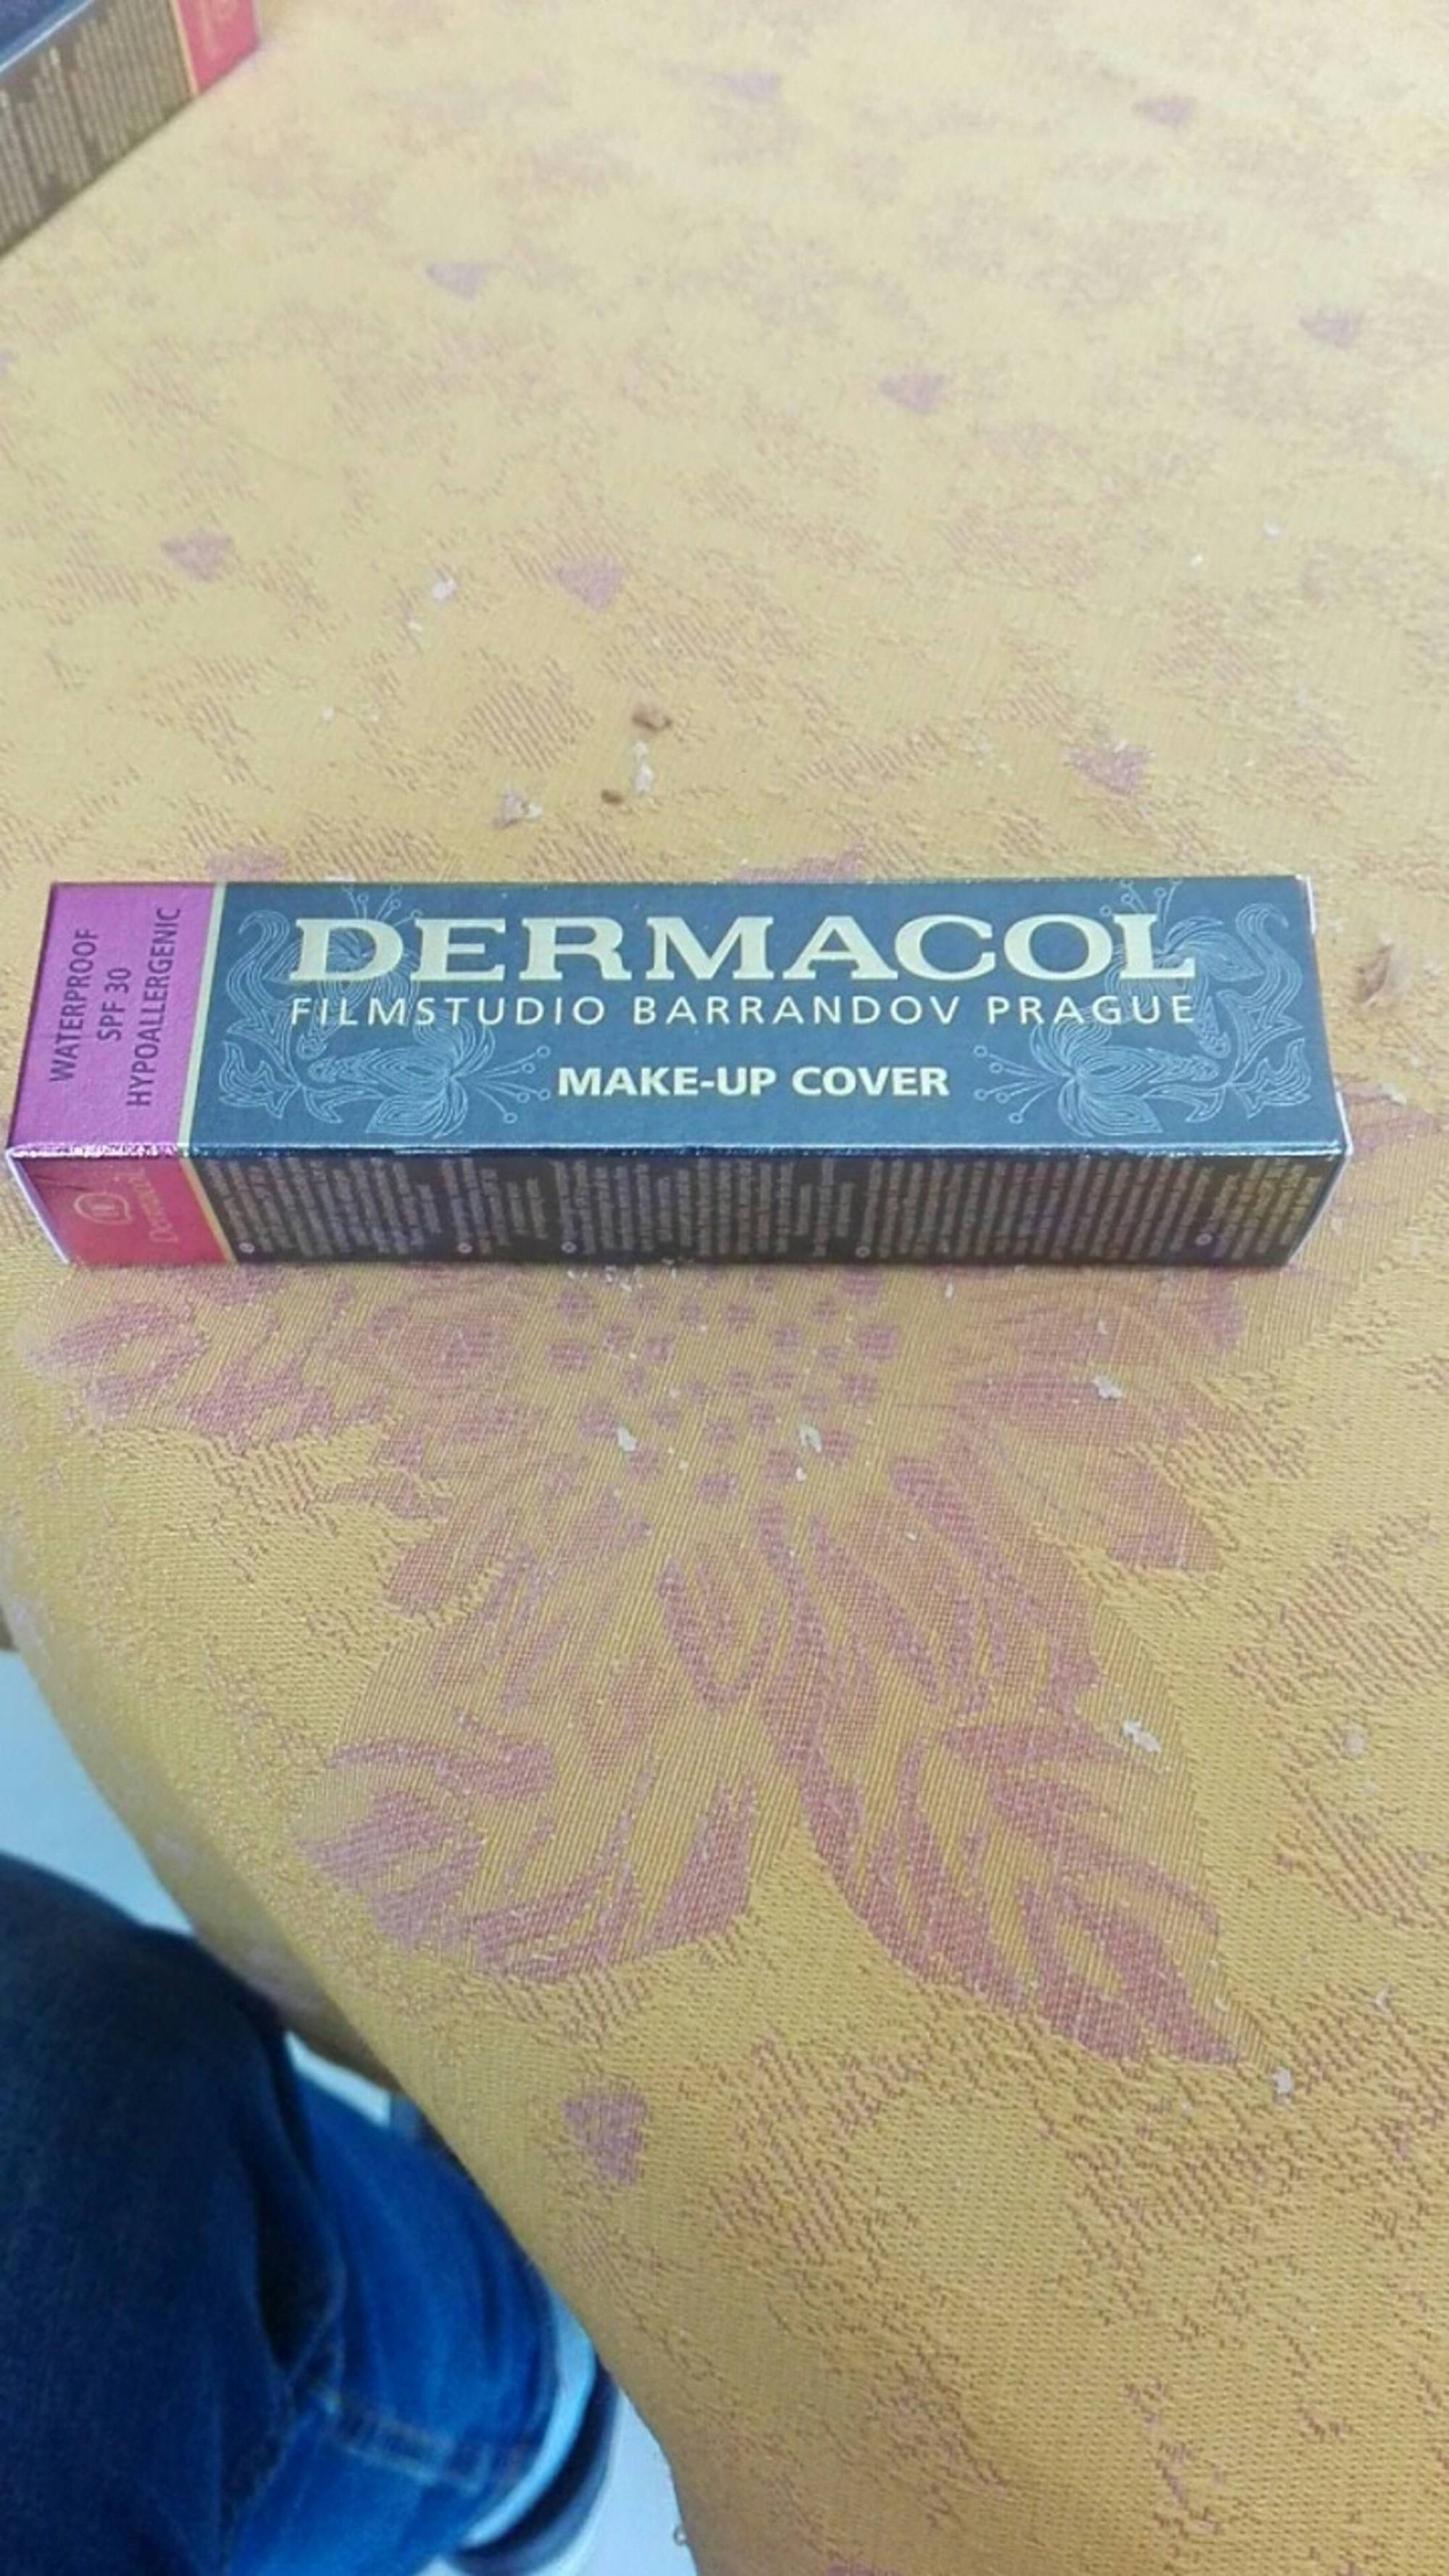 DERMACOL - Filmstudio barrandov prague - Make-up cover